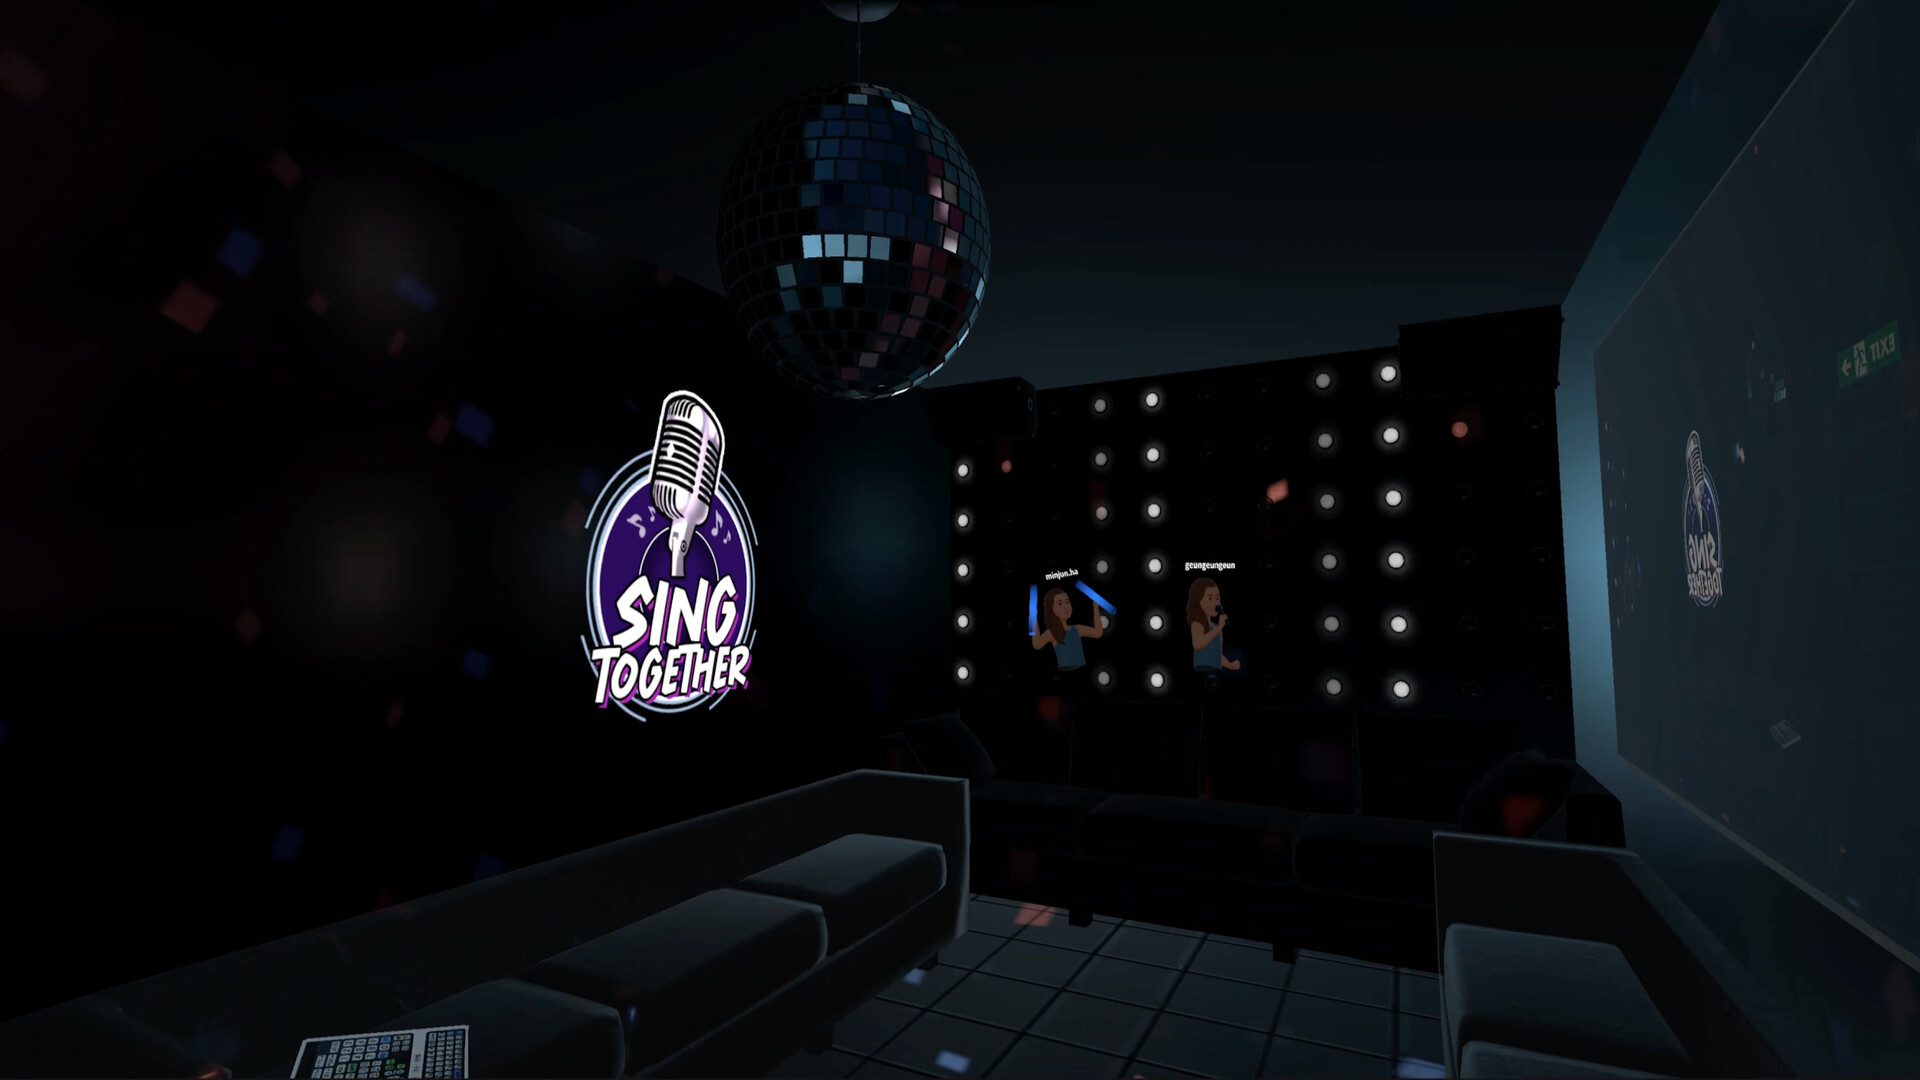 Sing Together: VR Karaoke on Steam